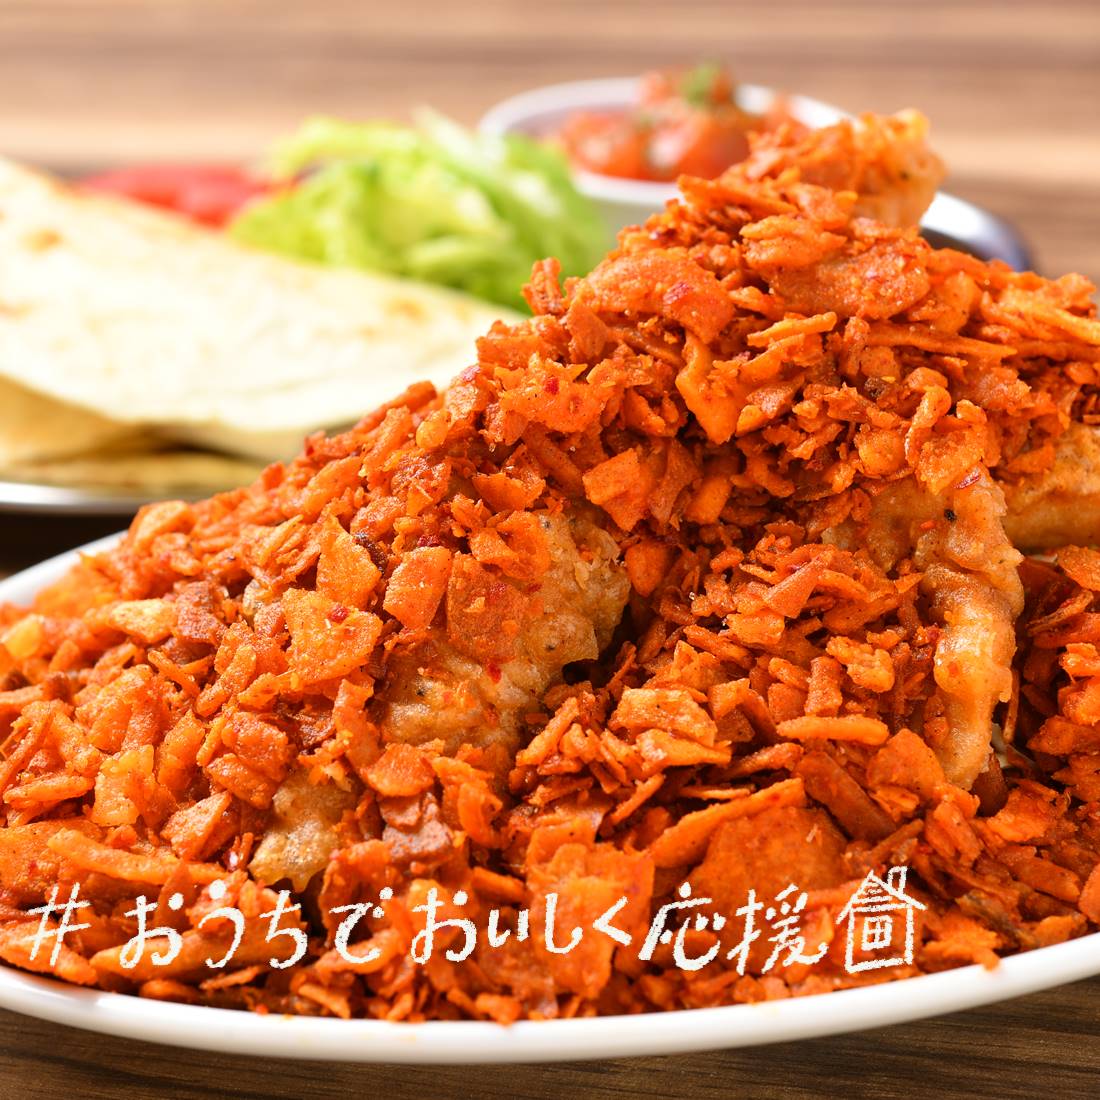 中区・栄｜「hot spice MUCHO chicken」のテイクアウトメニュー【#おうちでおいしく応援】